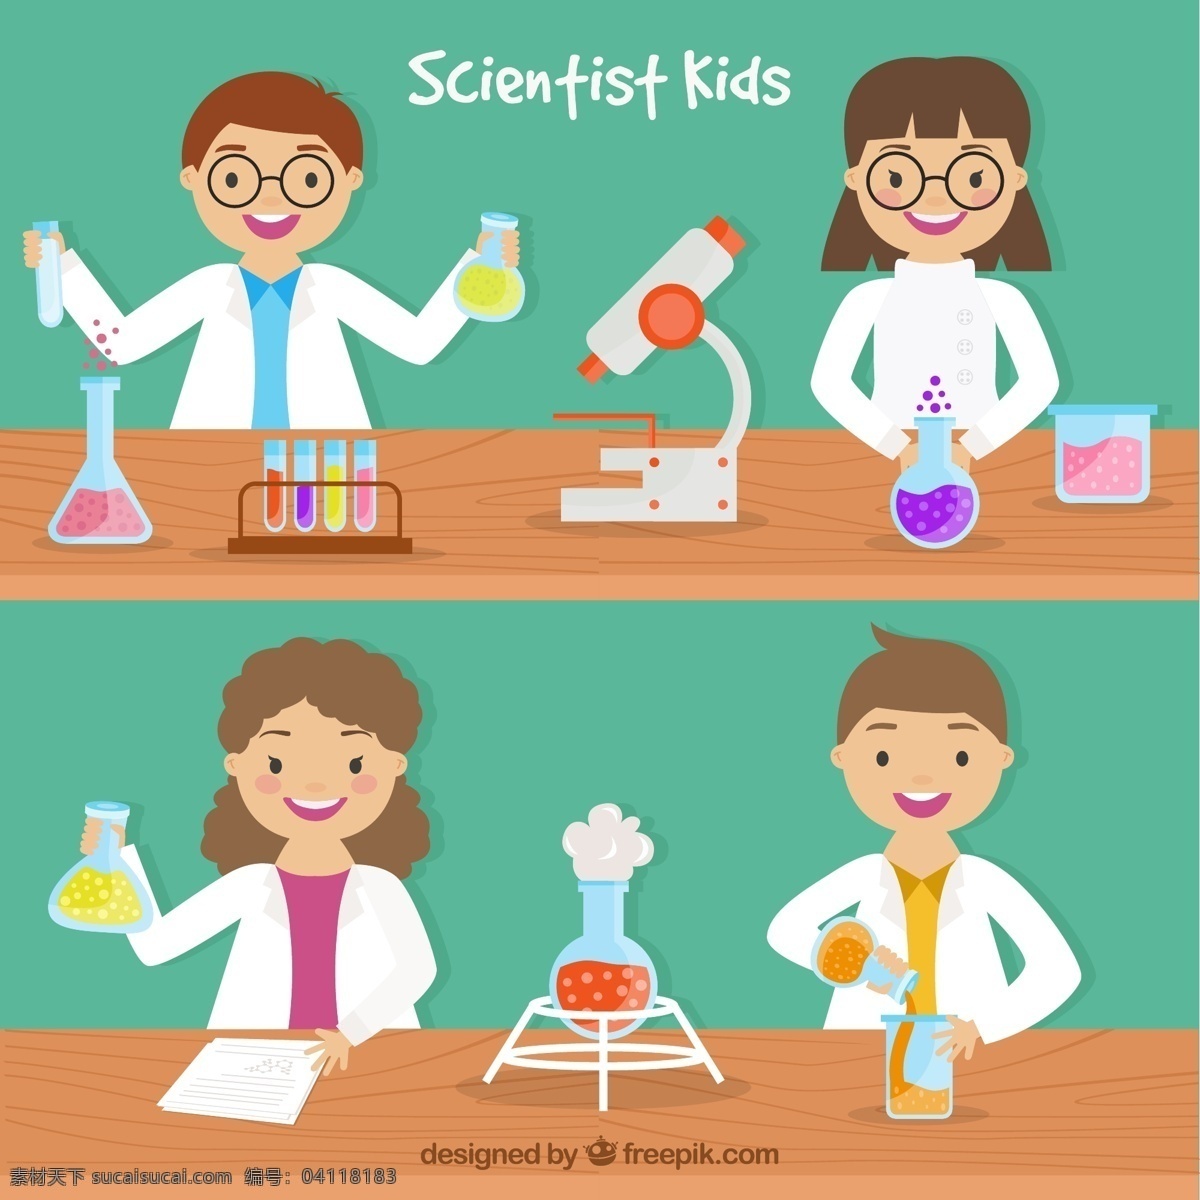 平面设计 中 科学家 儿童 卡通 平板 科学 平板设计 化学 实验室 原子 测试 分子 显微镜 试管 青色 天蓝色